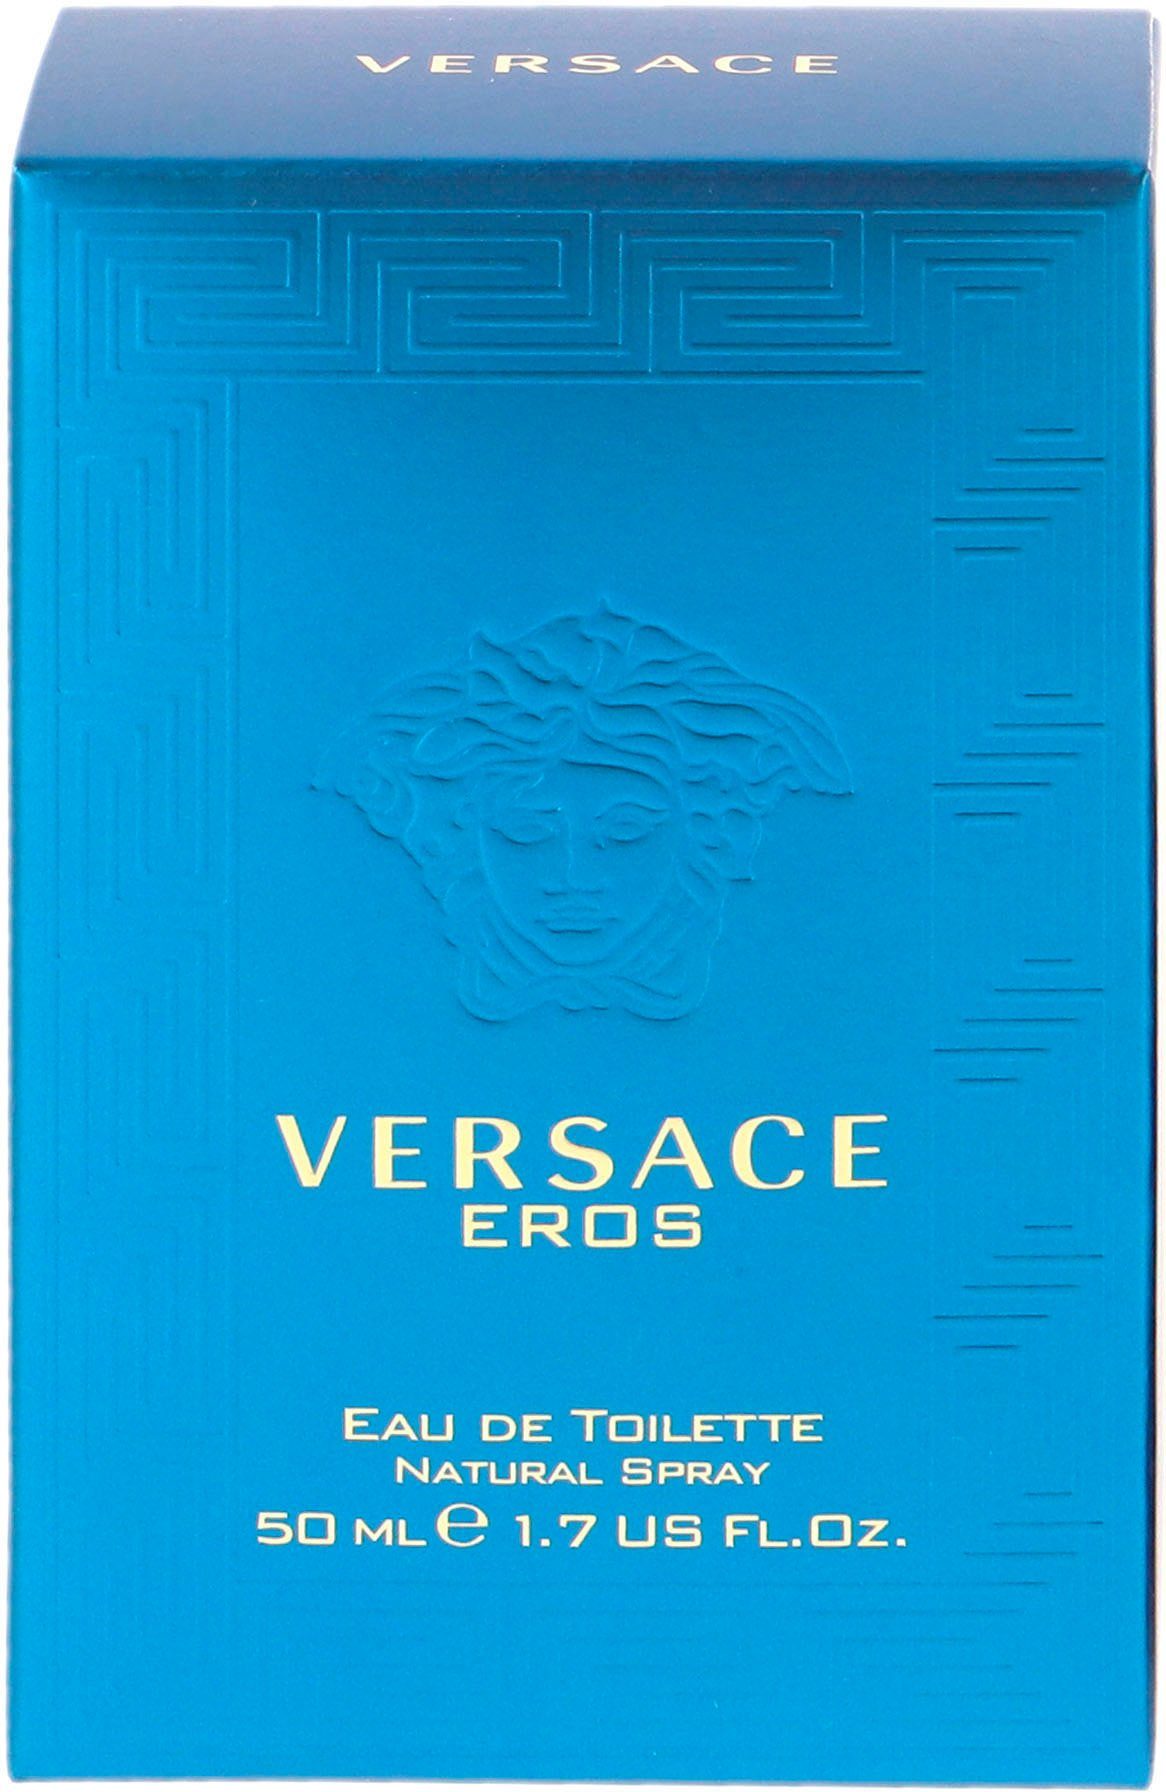 Versace Eros Toilette de Eau